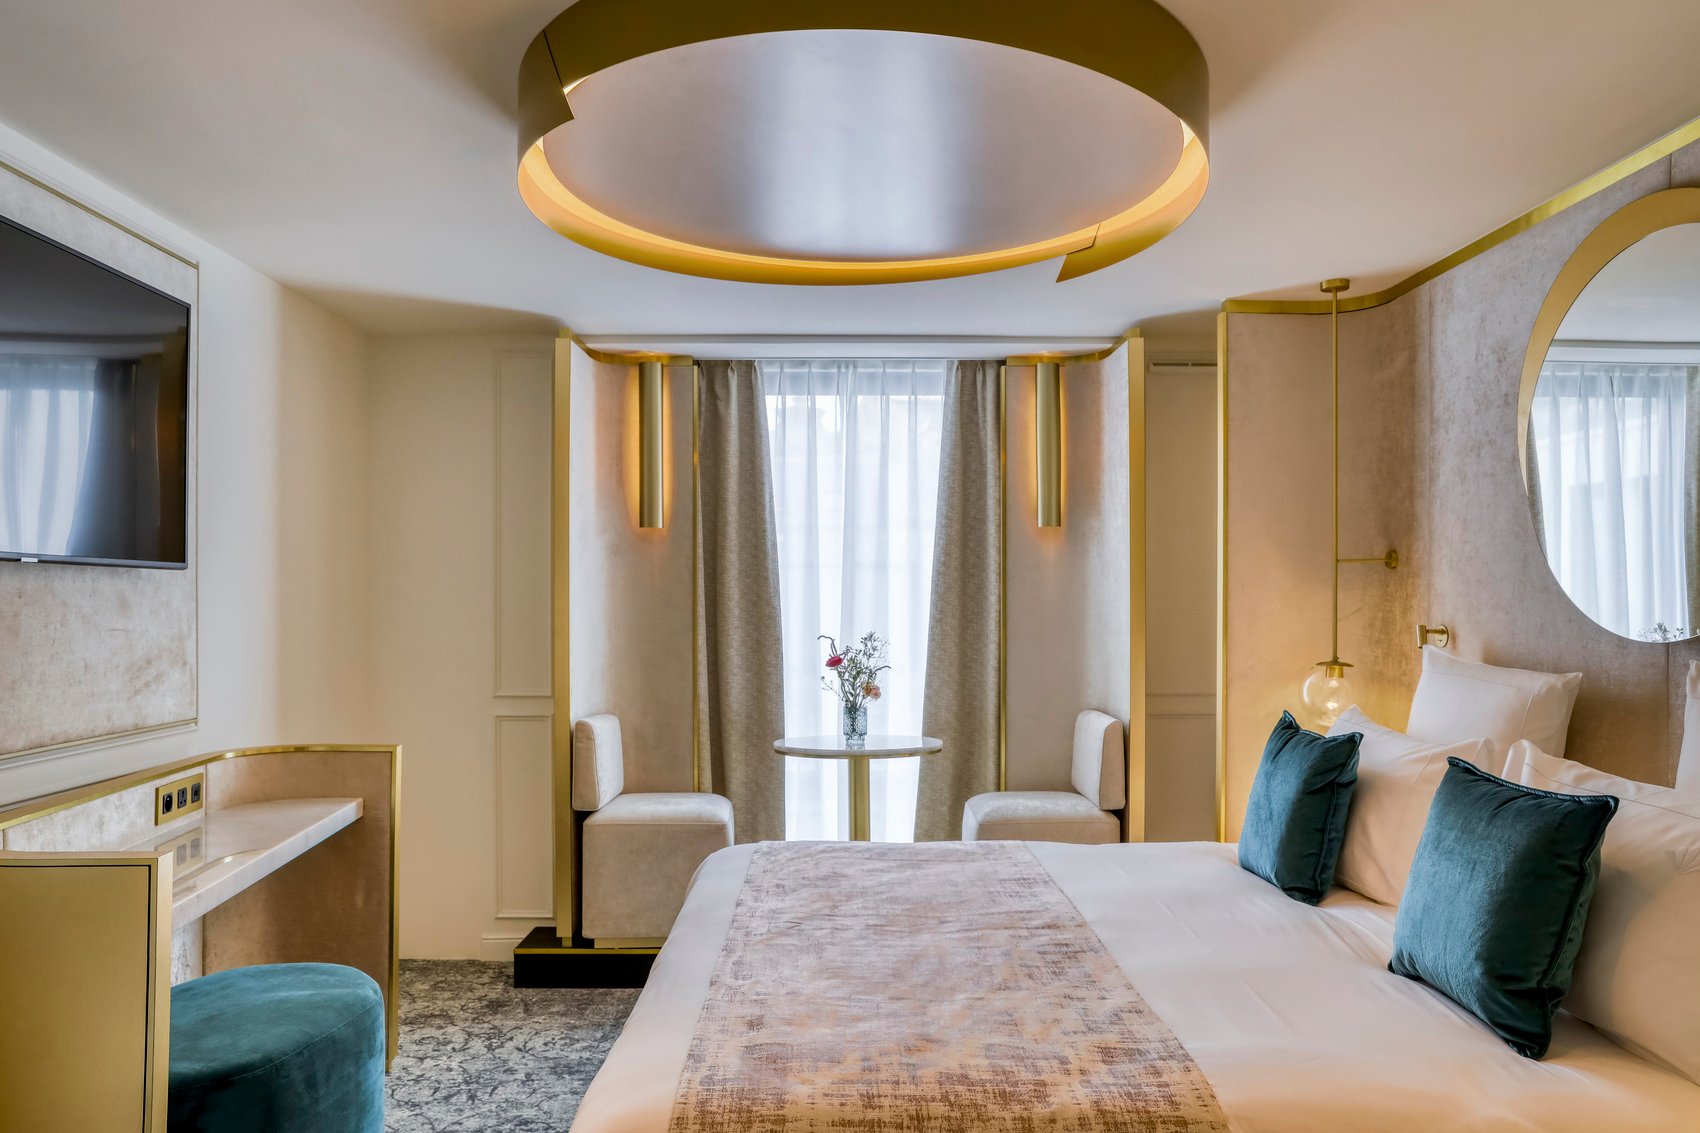 Luxury boutique hotel - Maison Albar Hotels Le Vendome 5 stars - Suite